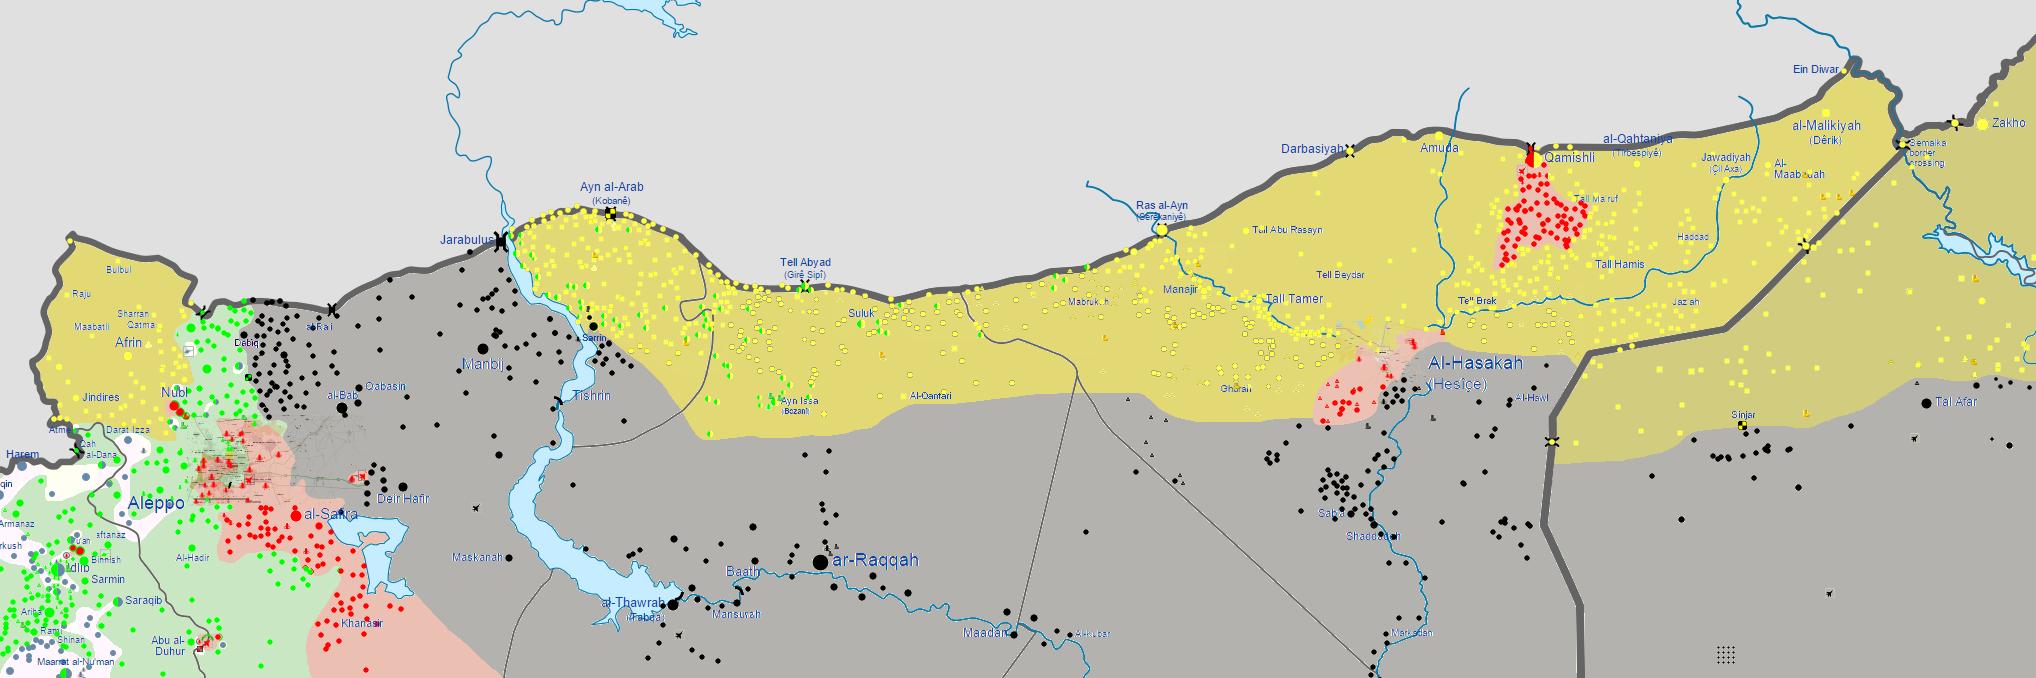 Rojava territory